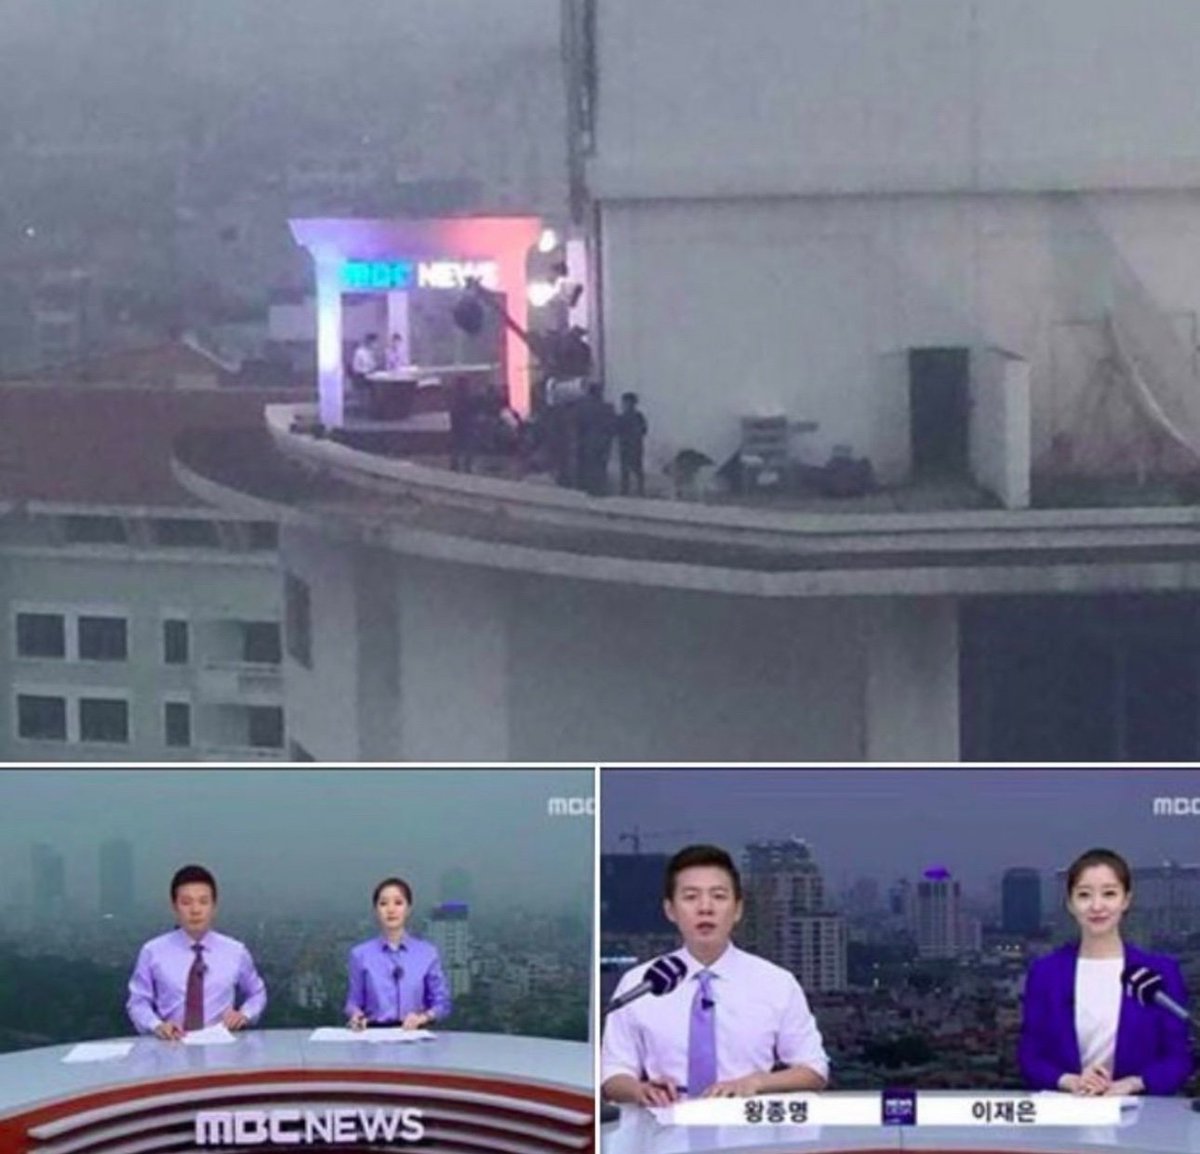 韓国のテレビ局がグリーンバック使う予算ないから実際に屋上で撮ったの好き